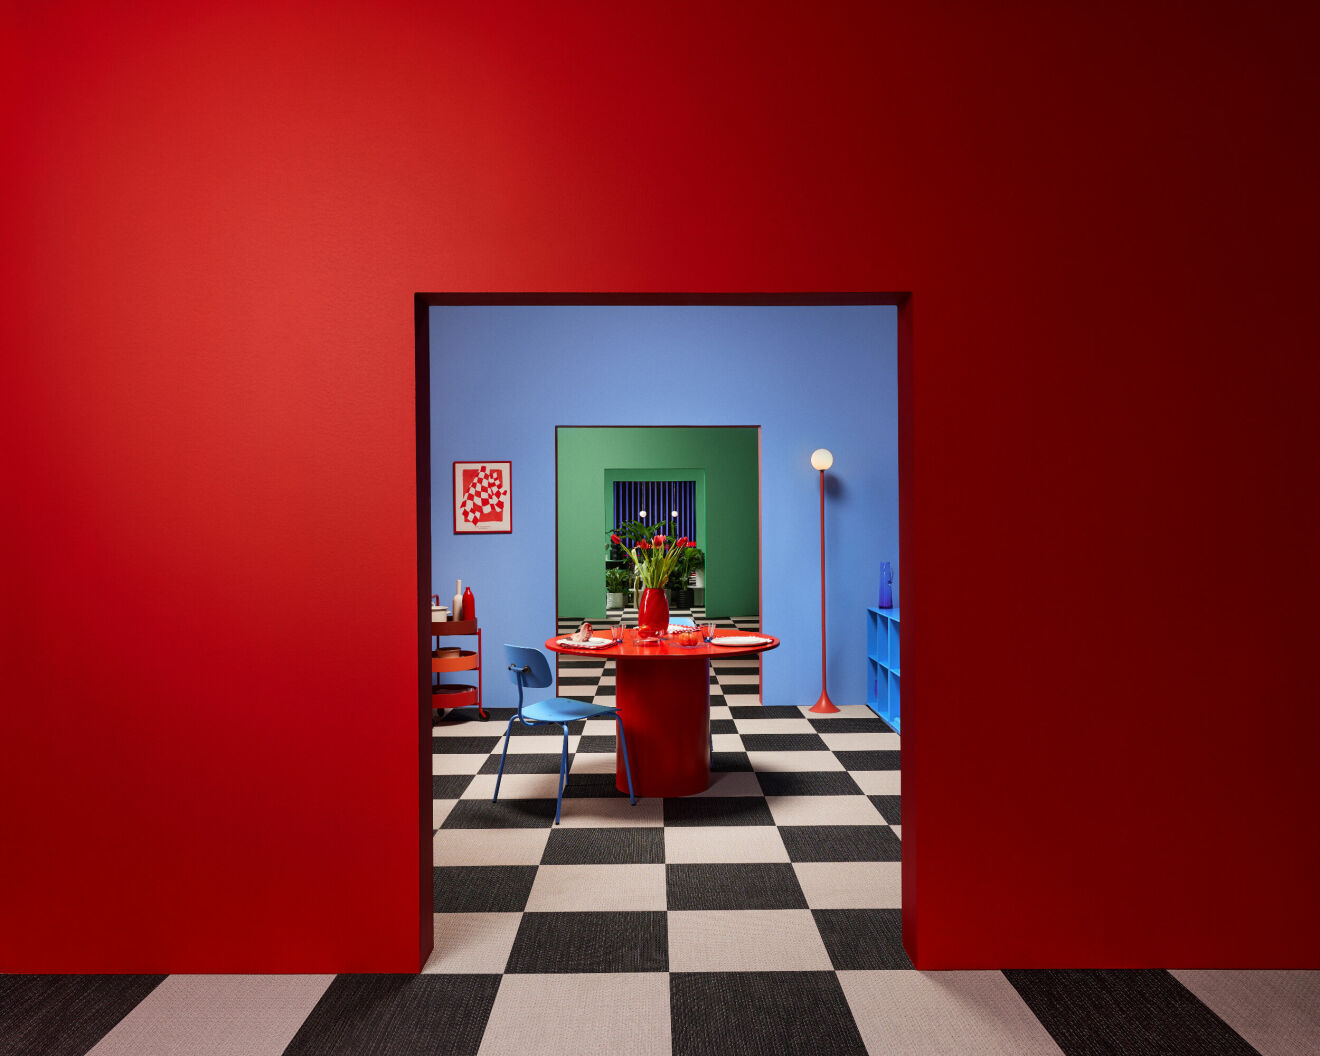 Tekla Severin Formex utställning i rött och blått